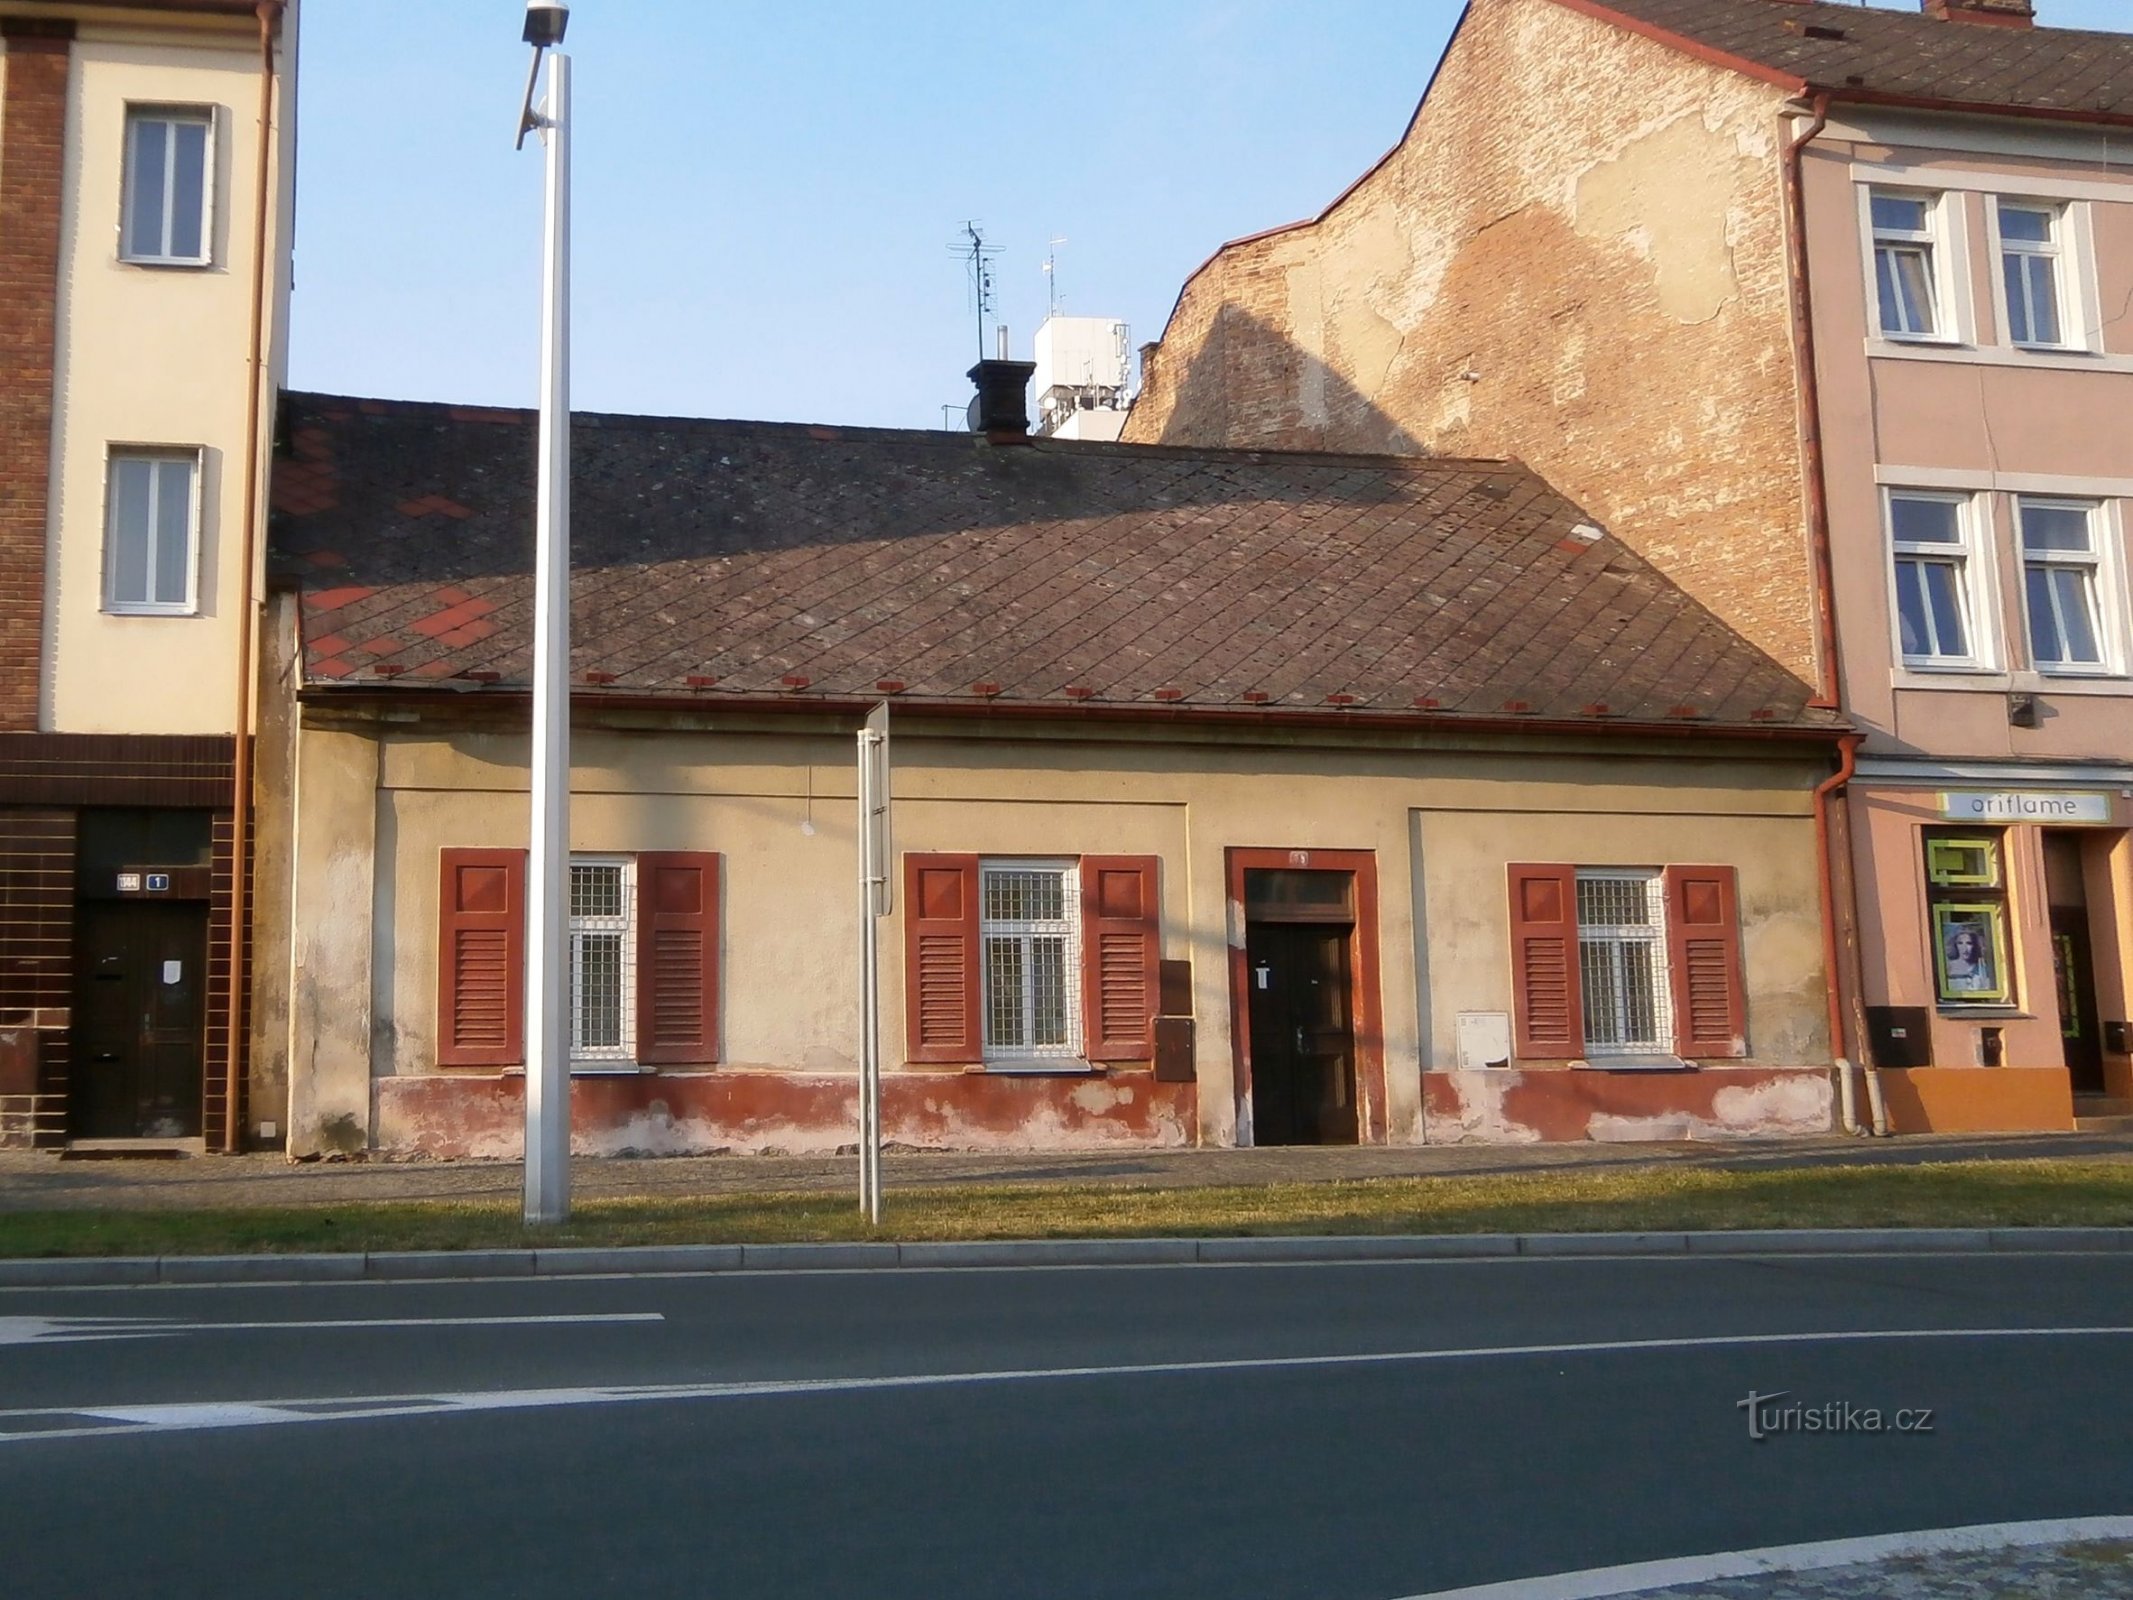 78. számú állomás (Hradec Králové, 27.7.2014.)